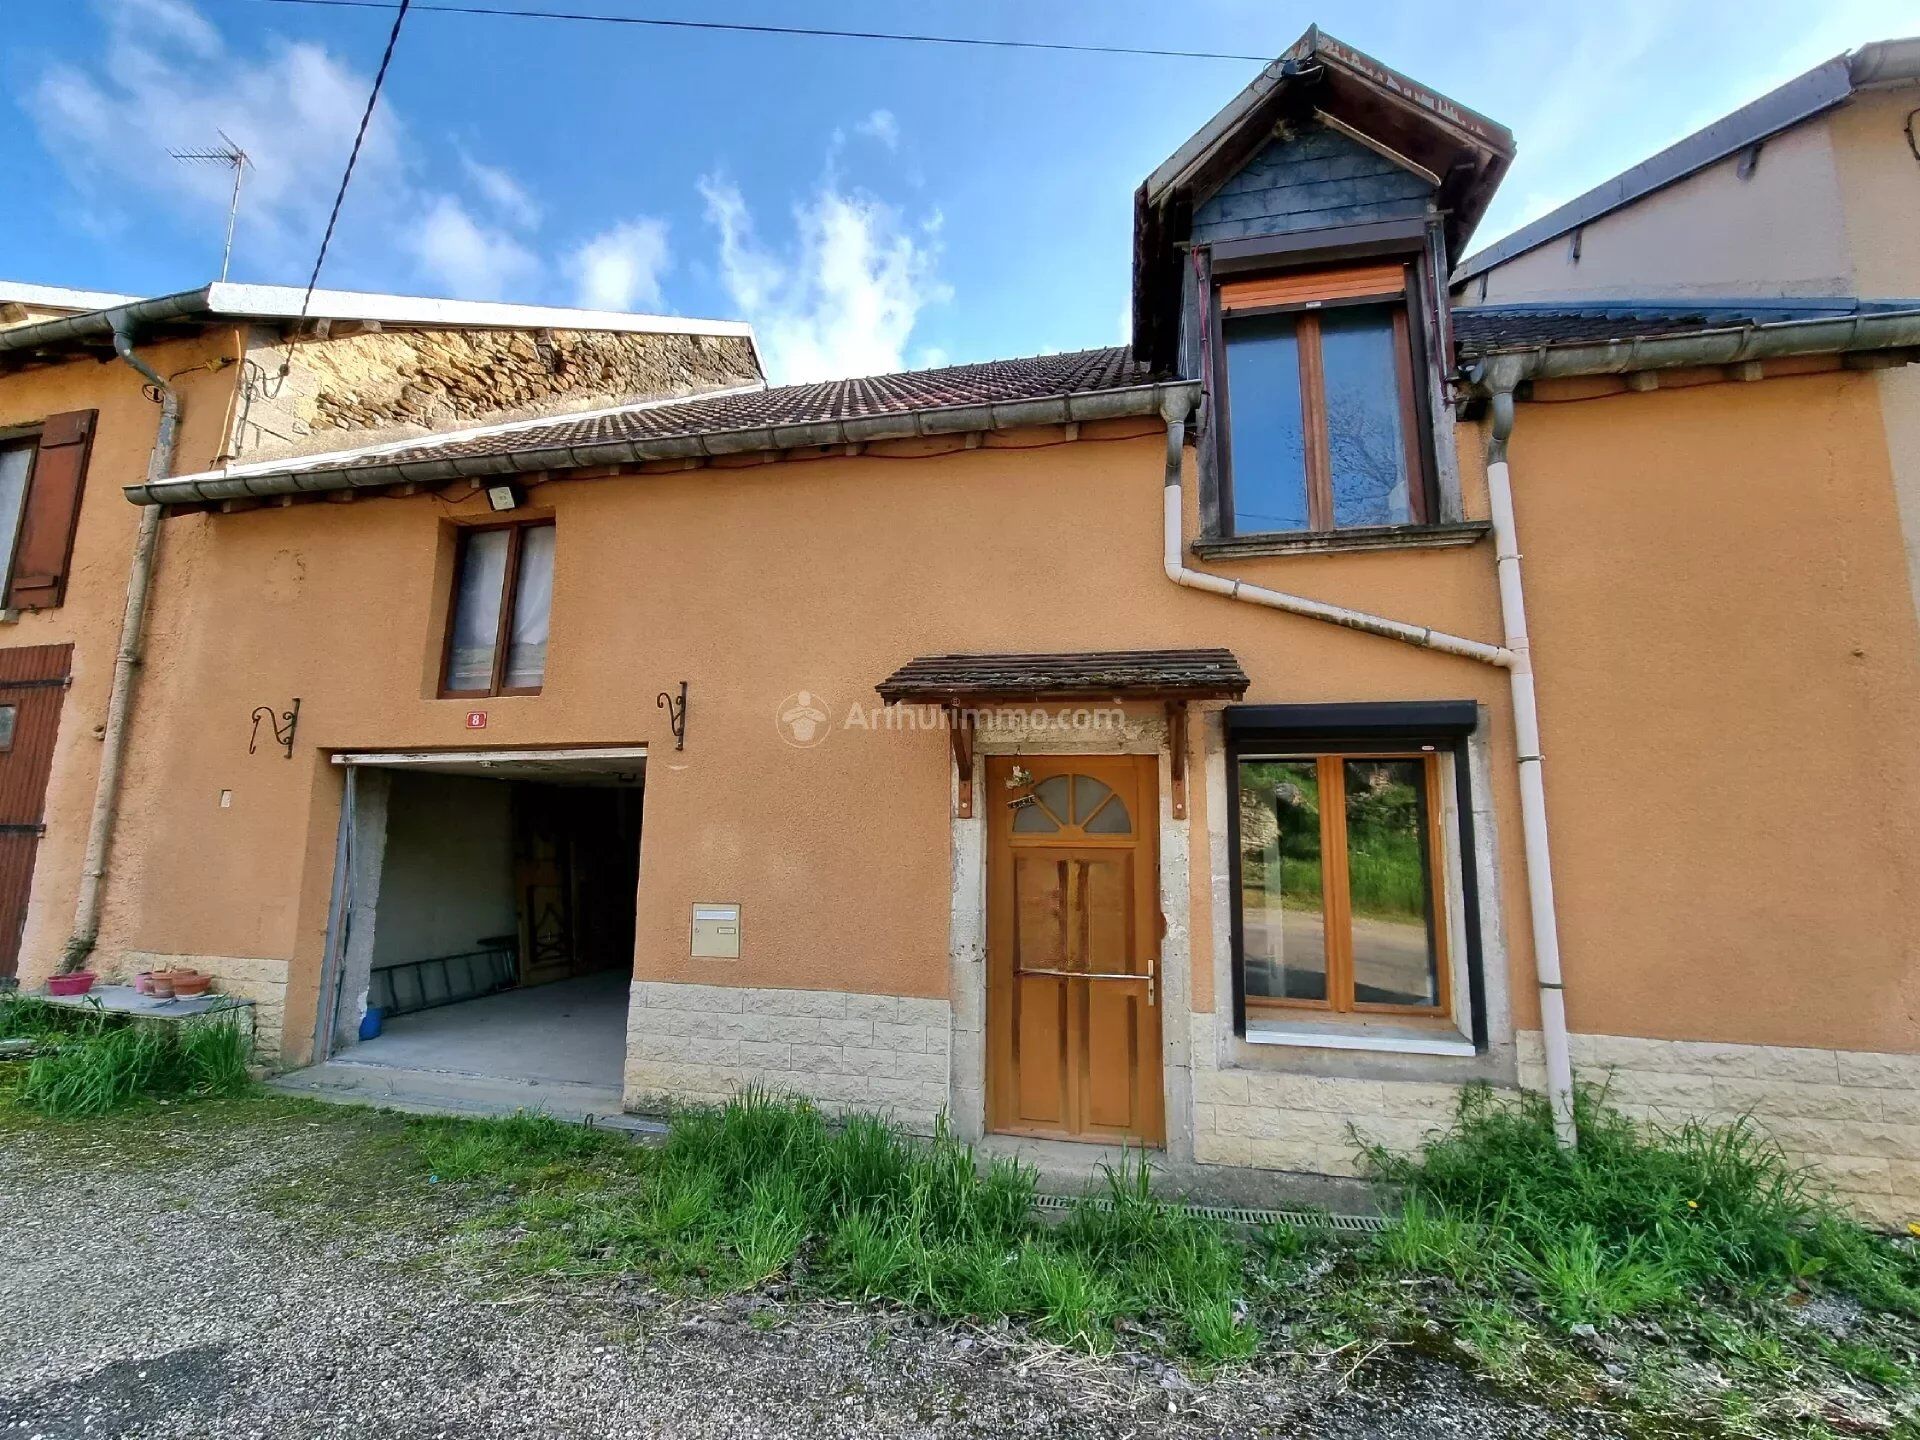 Vente Maison de village 132 m² à Malaincourt-sur-Meuse 65 000 €